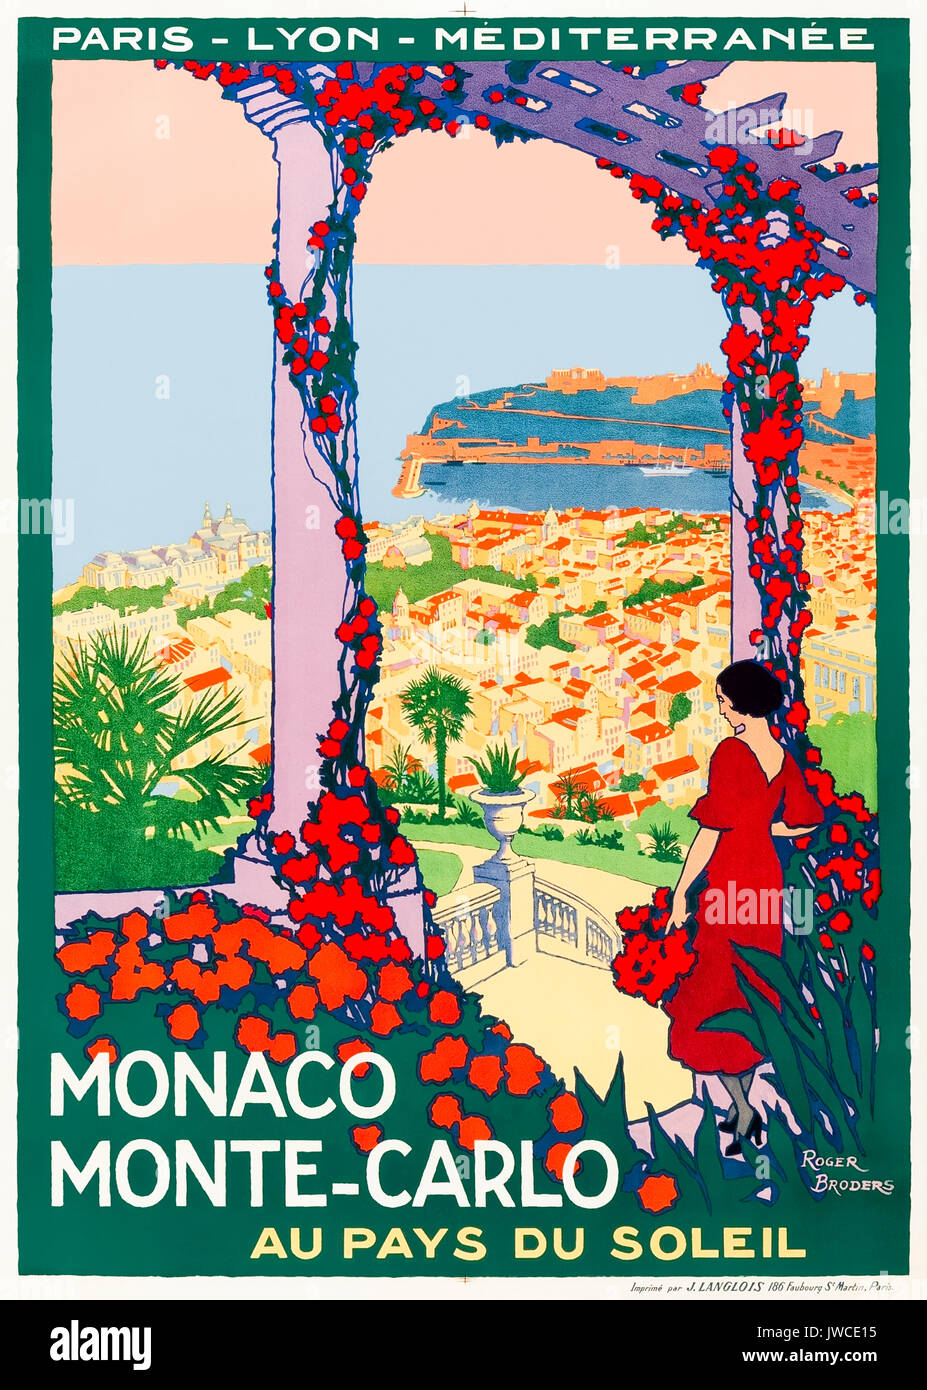 'Monaco Monte-Carlo au Pays du soleil' 1922 Tourismus Poster, die Aussicht von Jardin Exotique de Monaco auf den Hafen. Artwork von Roger Broders (1883-1953) für Paris Lyon Mediteranée Unternehmen (PLM) Eisenbahn. Stockfoto